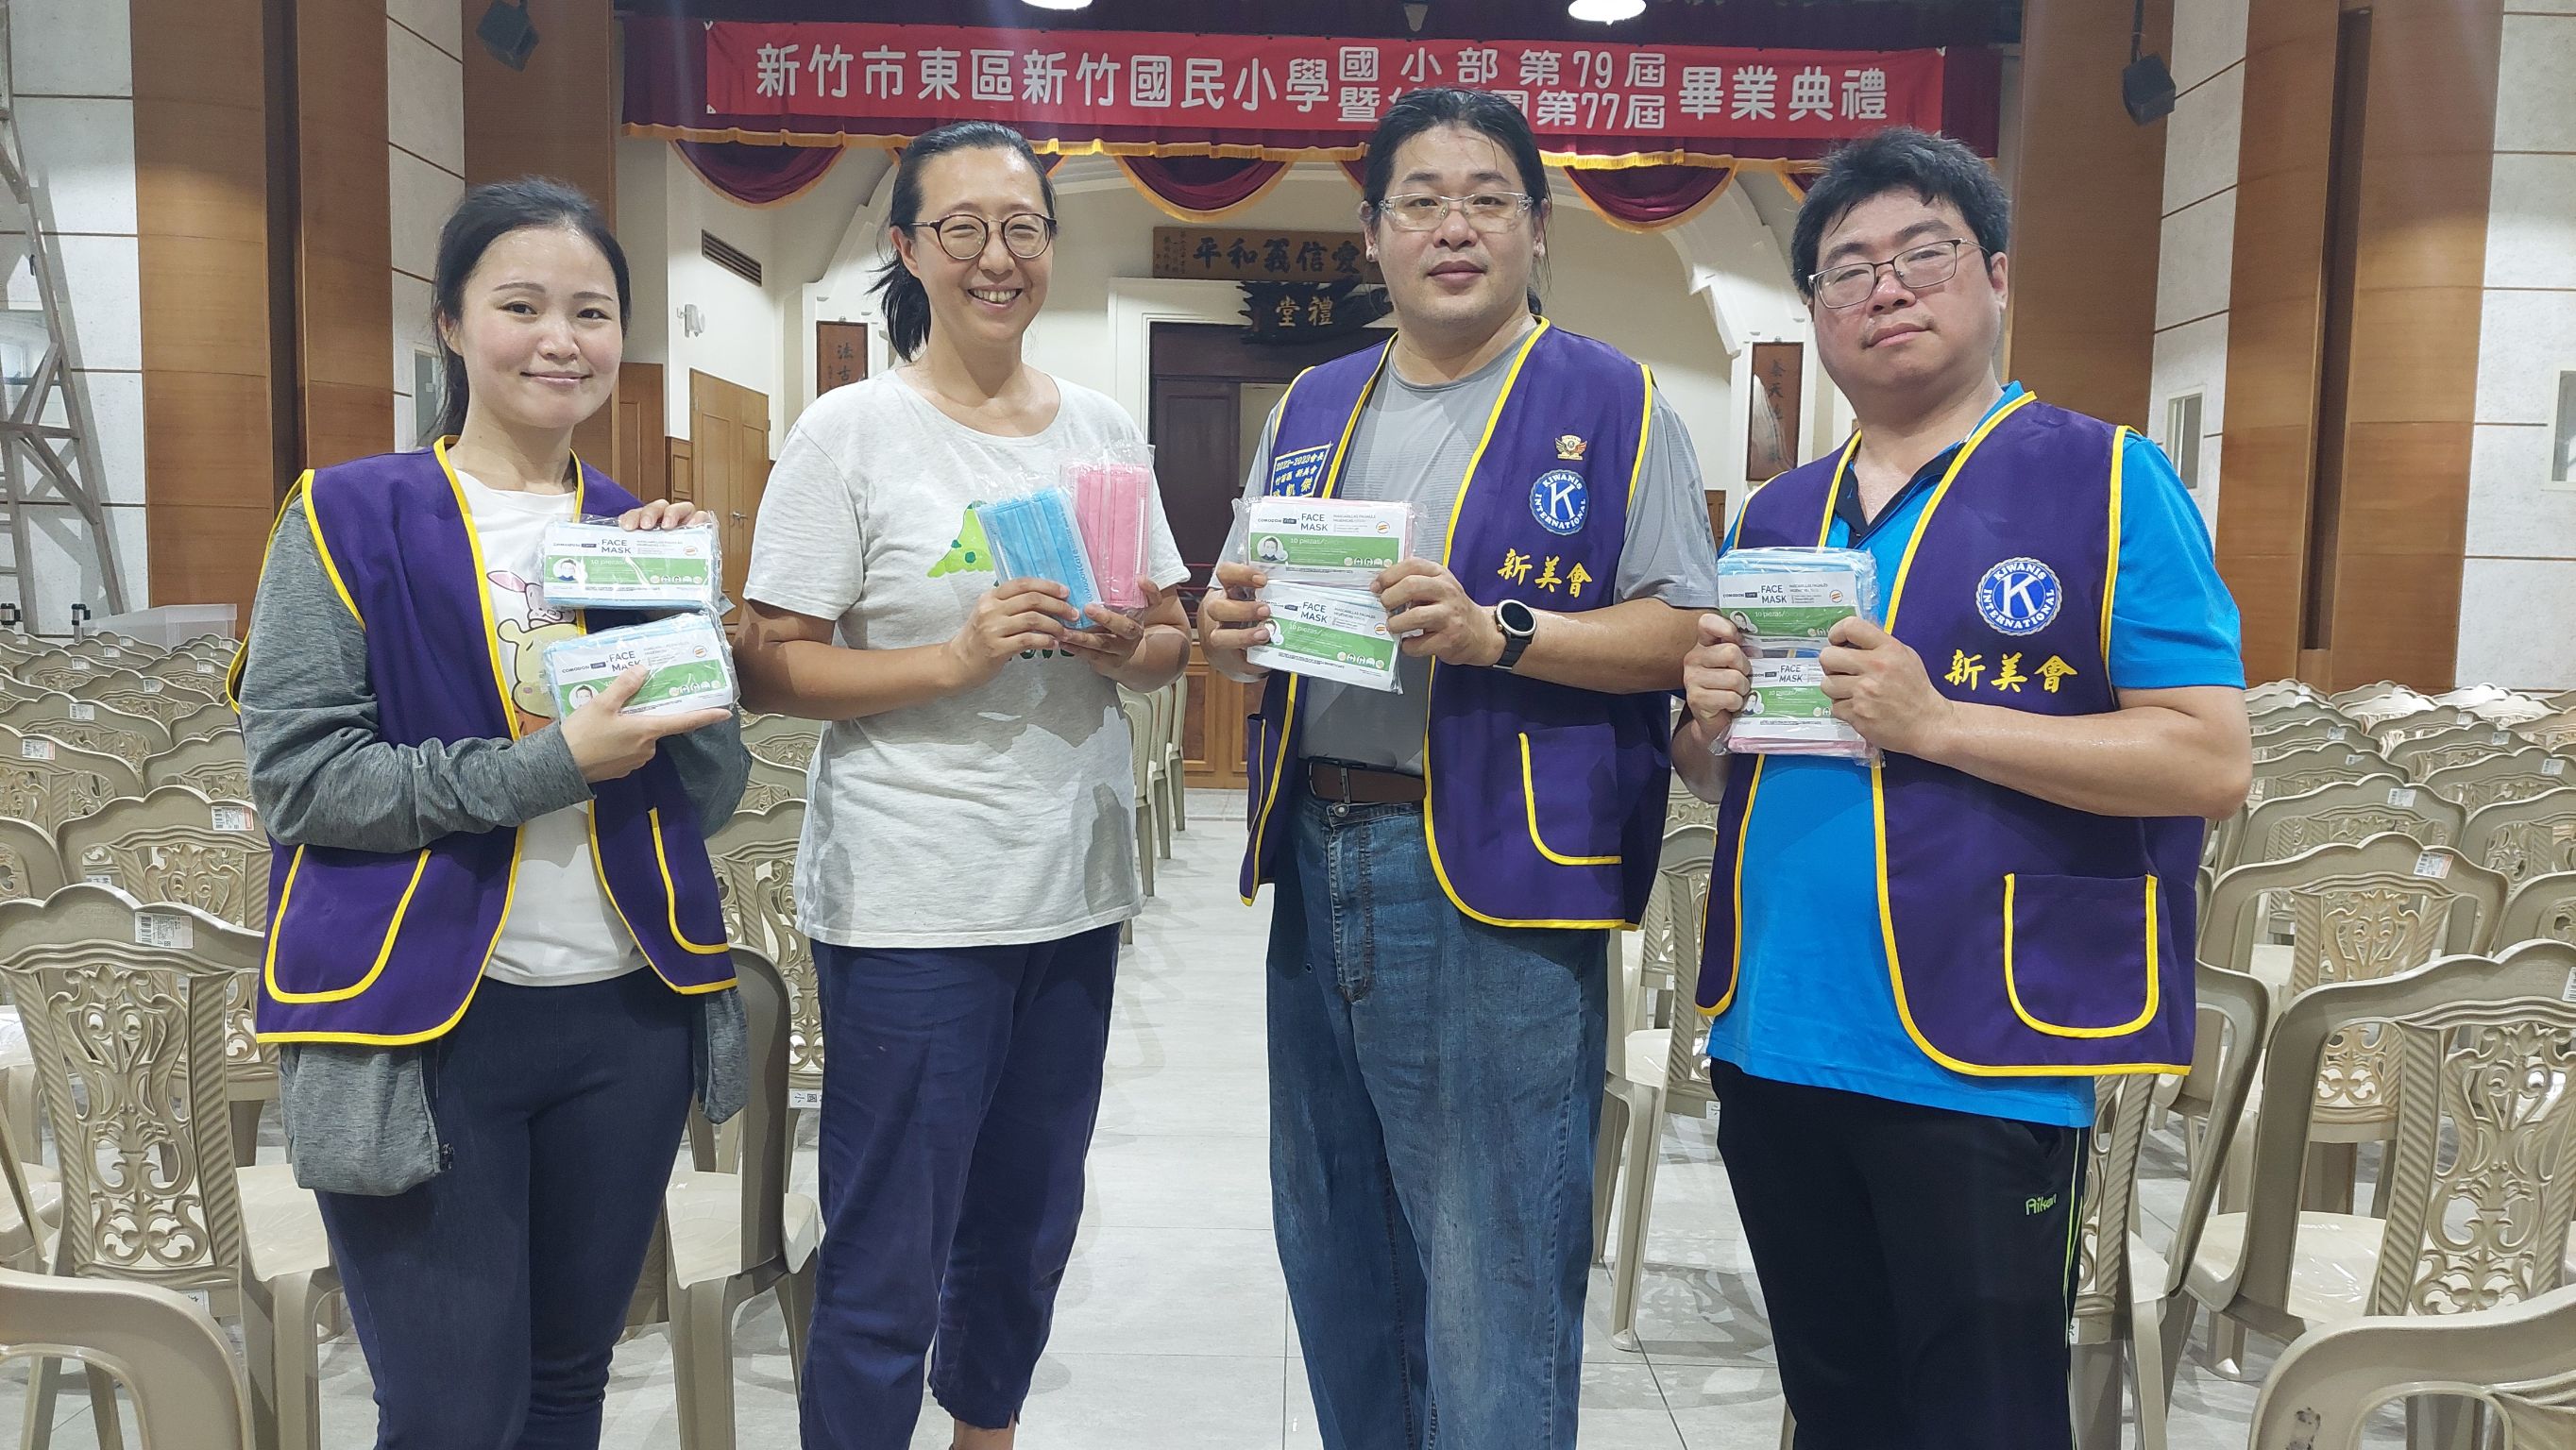 感謝郭雅蕙榮譽會長捐贈本校幼兒園防疫口罩2000份活動照片